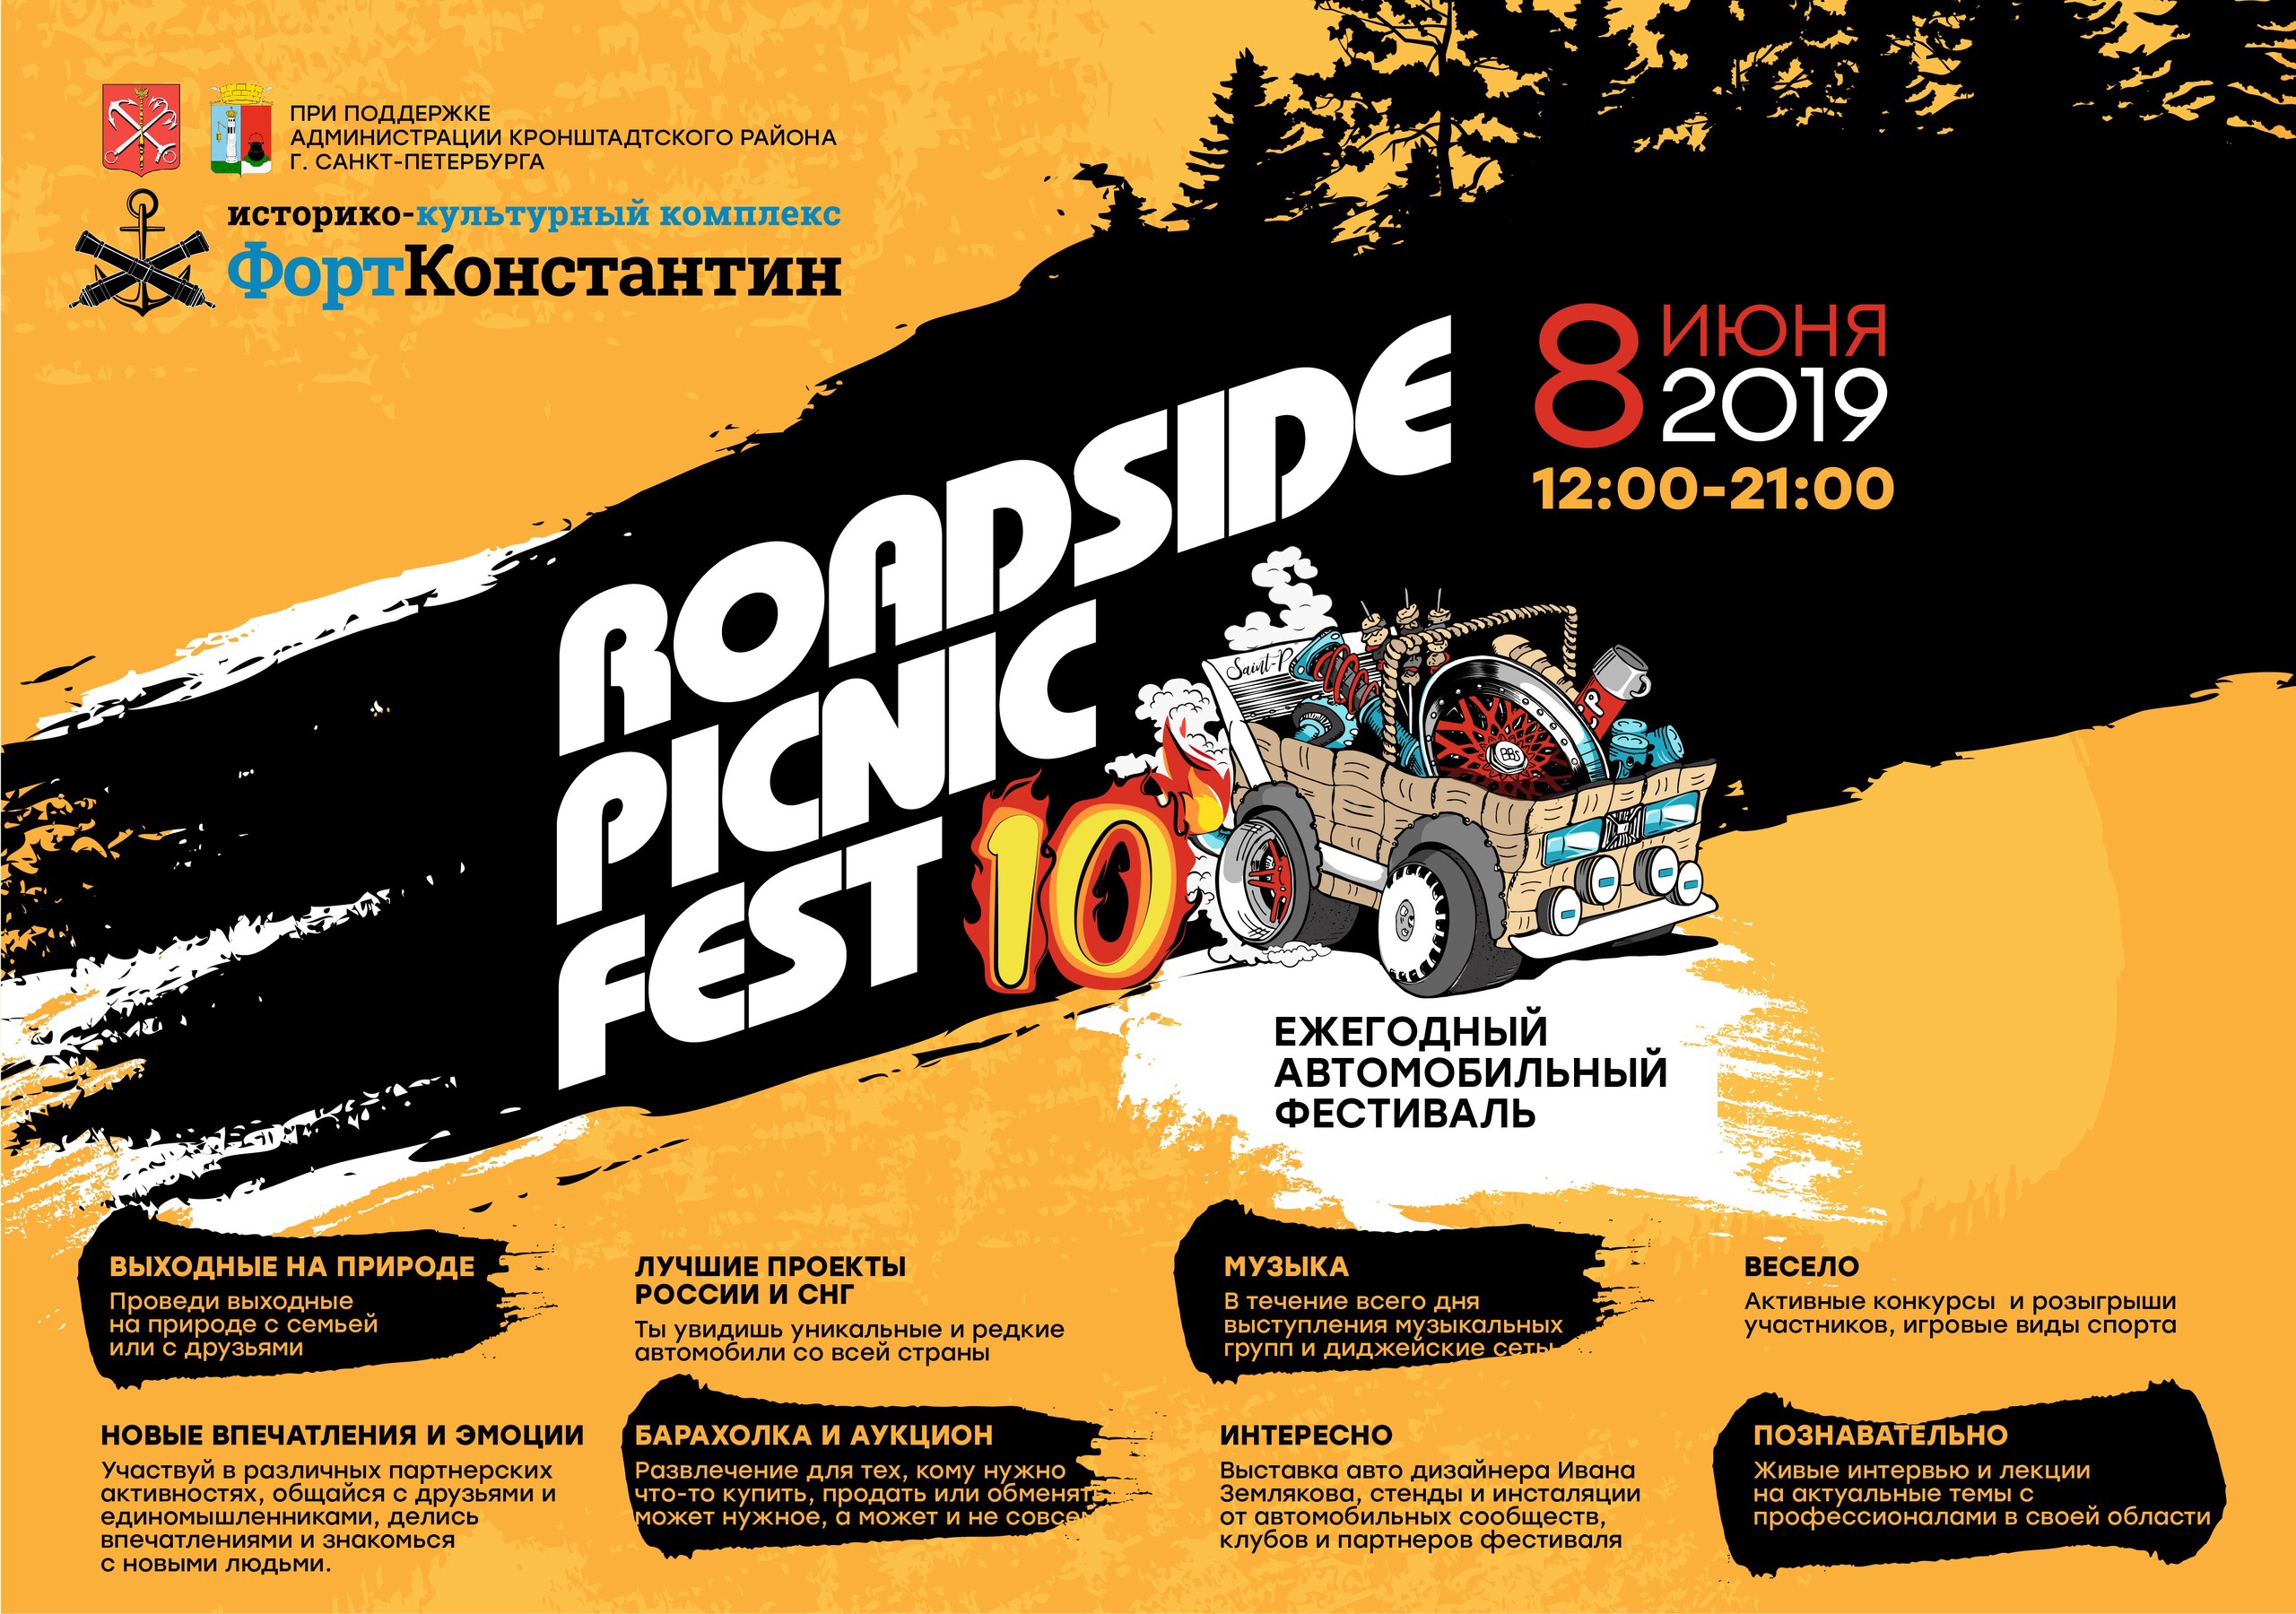 «Третий парк» стал генеральным партнёром Roadside Picnic который состоится 8 июня 2019